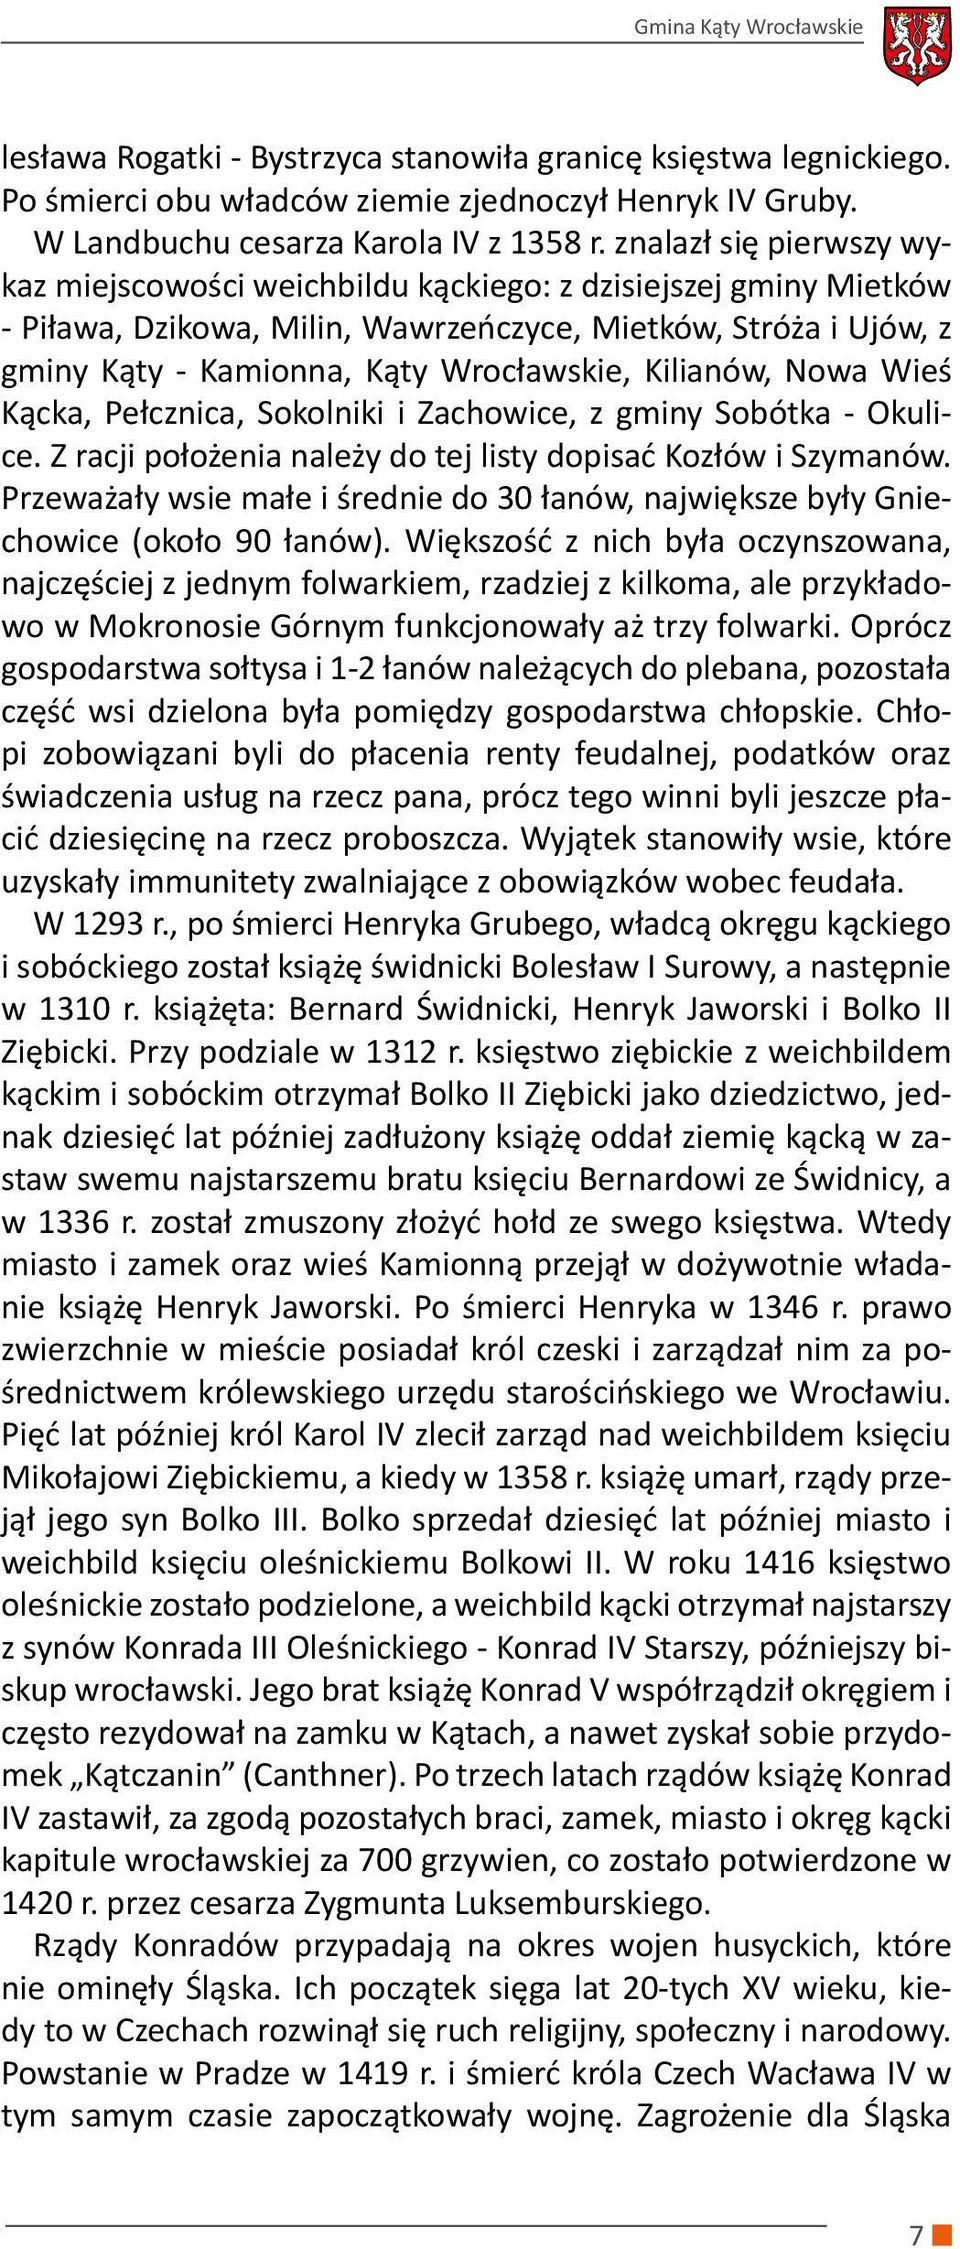 Kilianów, Nowa Wieś Kącka, Pełcznica, Sokolniki i Zachowice, z gminy Sobótka - Okulice. Z racji położenia należy do tej listy dopisać Kozłów i Szymanów.